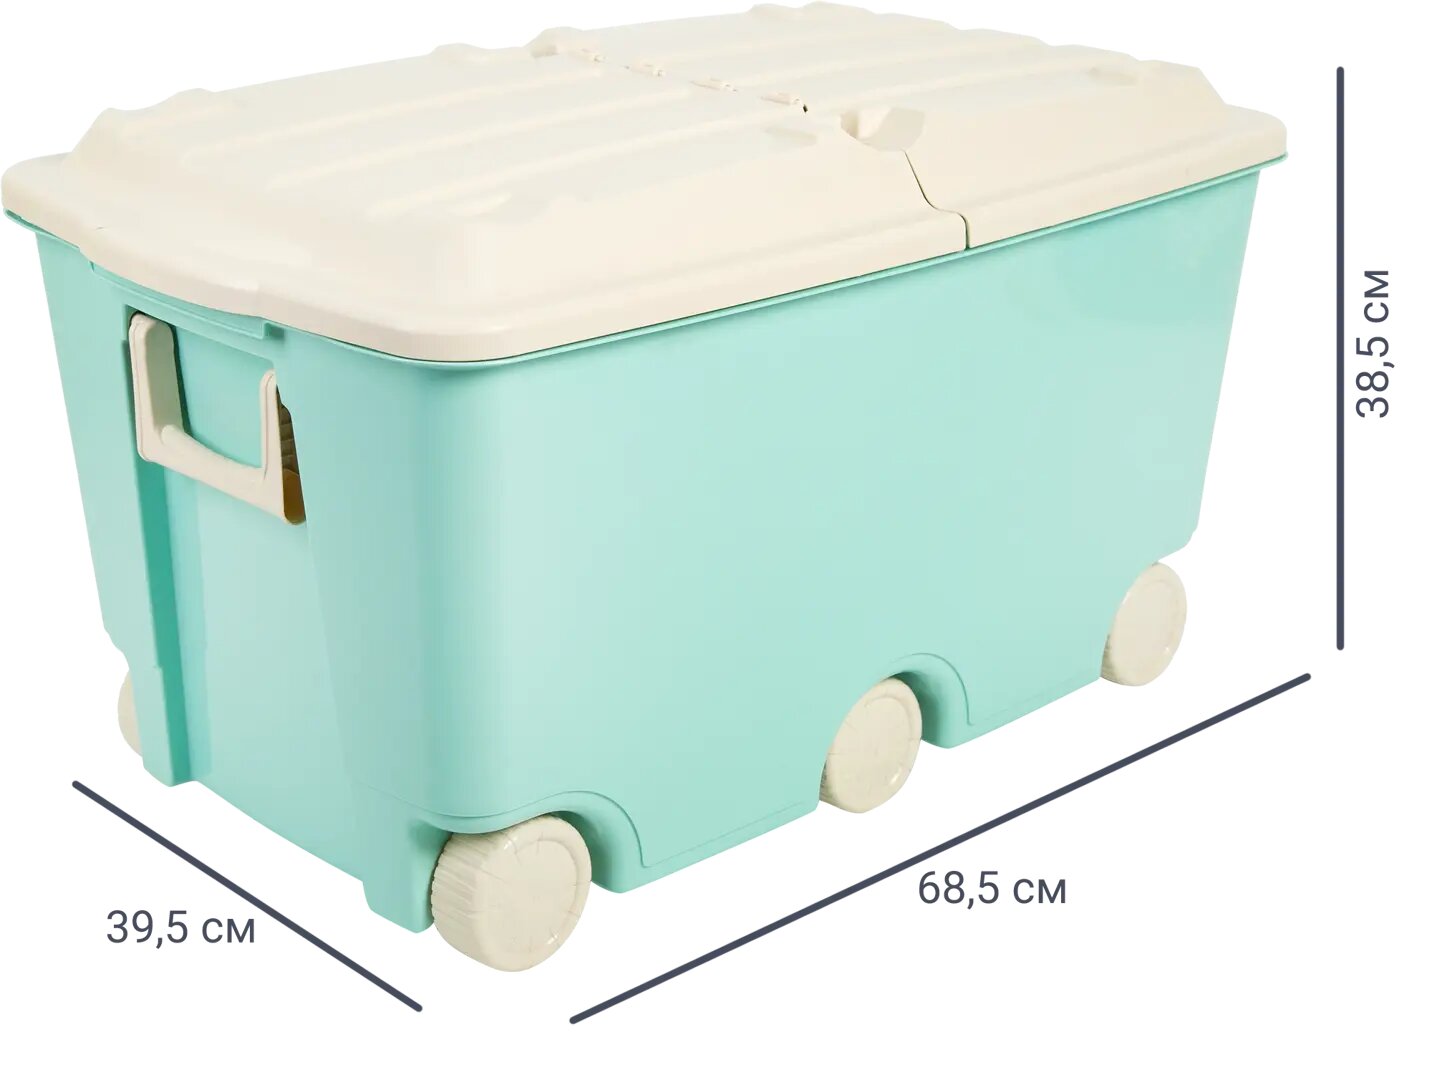 Ящик для игрушек 39.5x68.5x38.5 см 66.5 л пластик с крышкой цвет зелёный